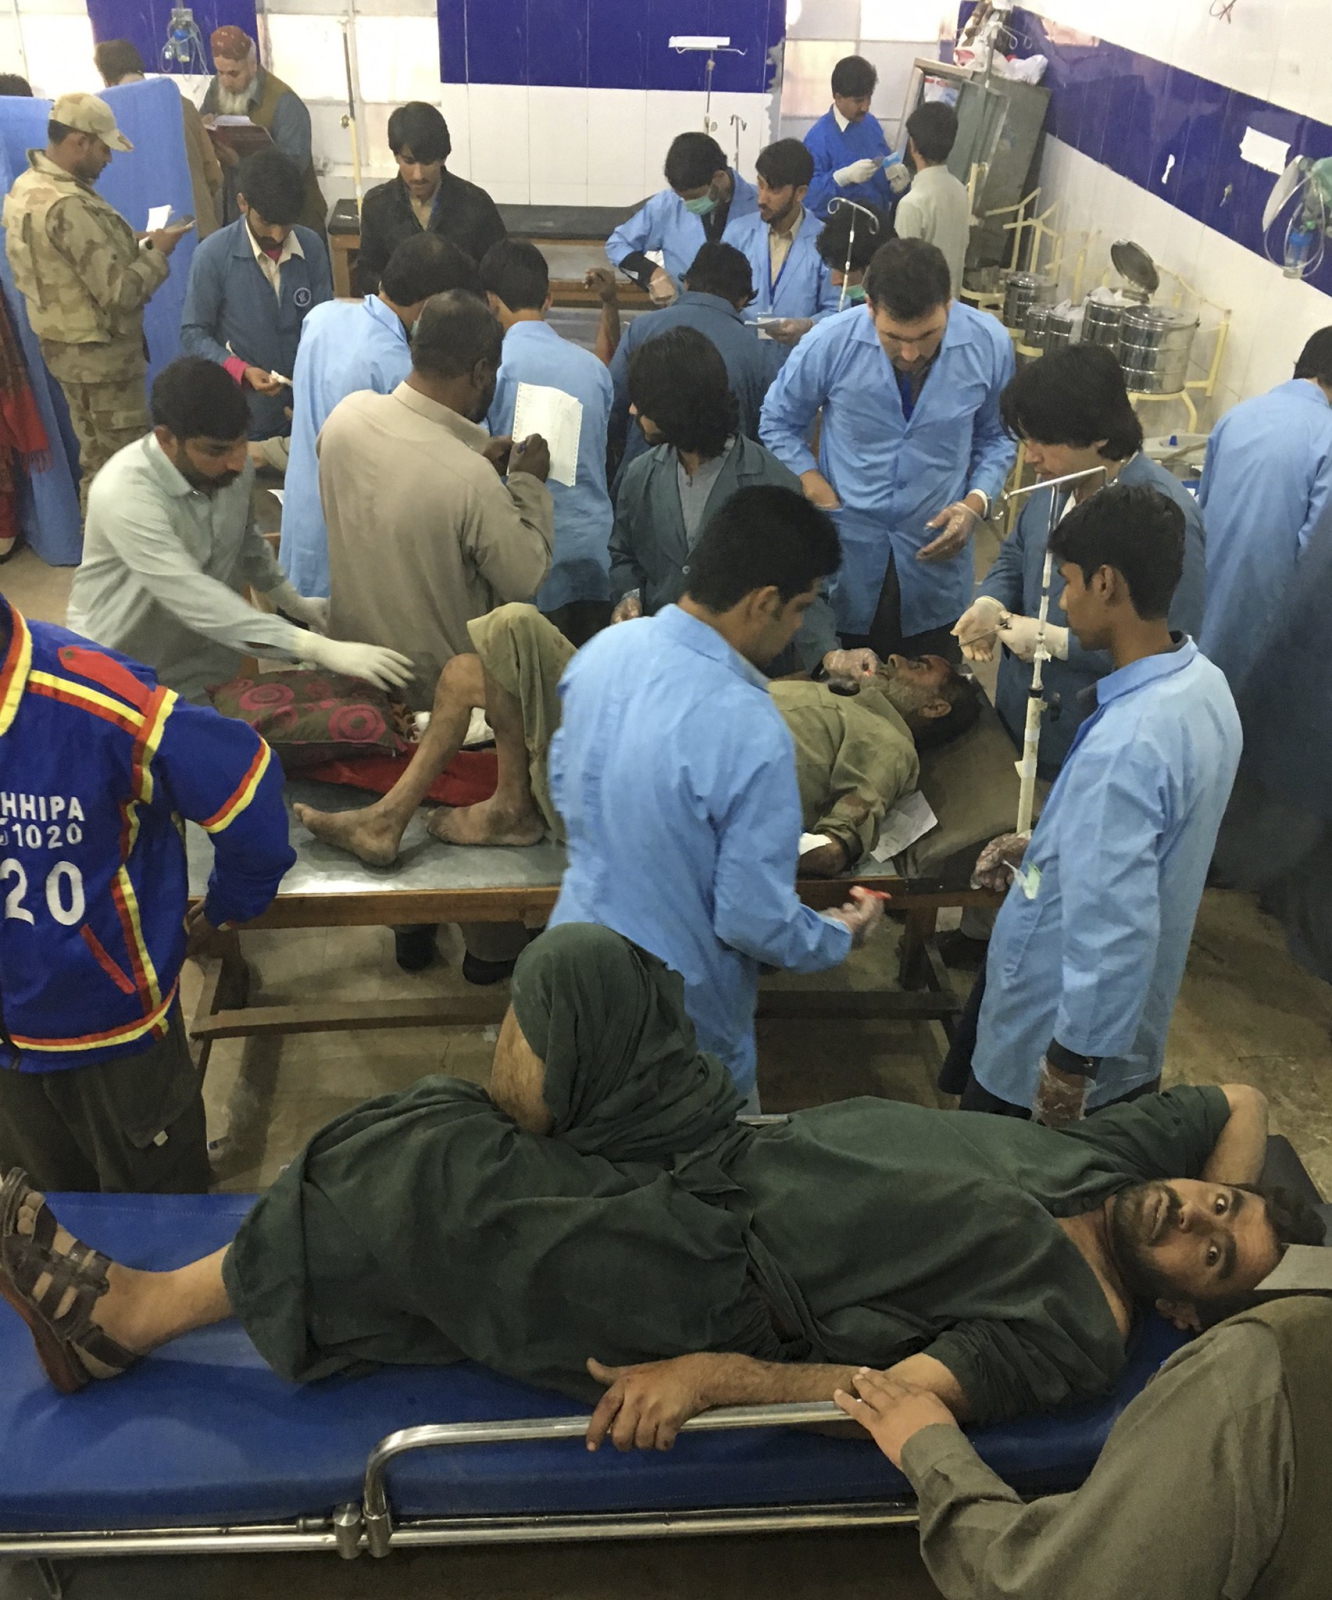 Wypadek busa w Pakistanie. Przynajmniej siedem osób zmarło, a 20 jest rannych.
Fot. PAP/EPA/WAHEED KHAN